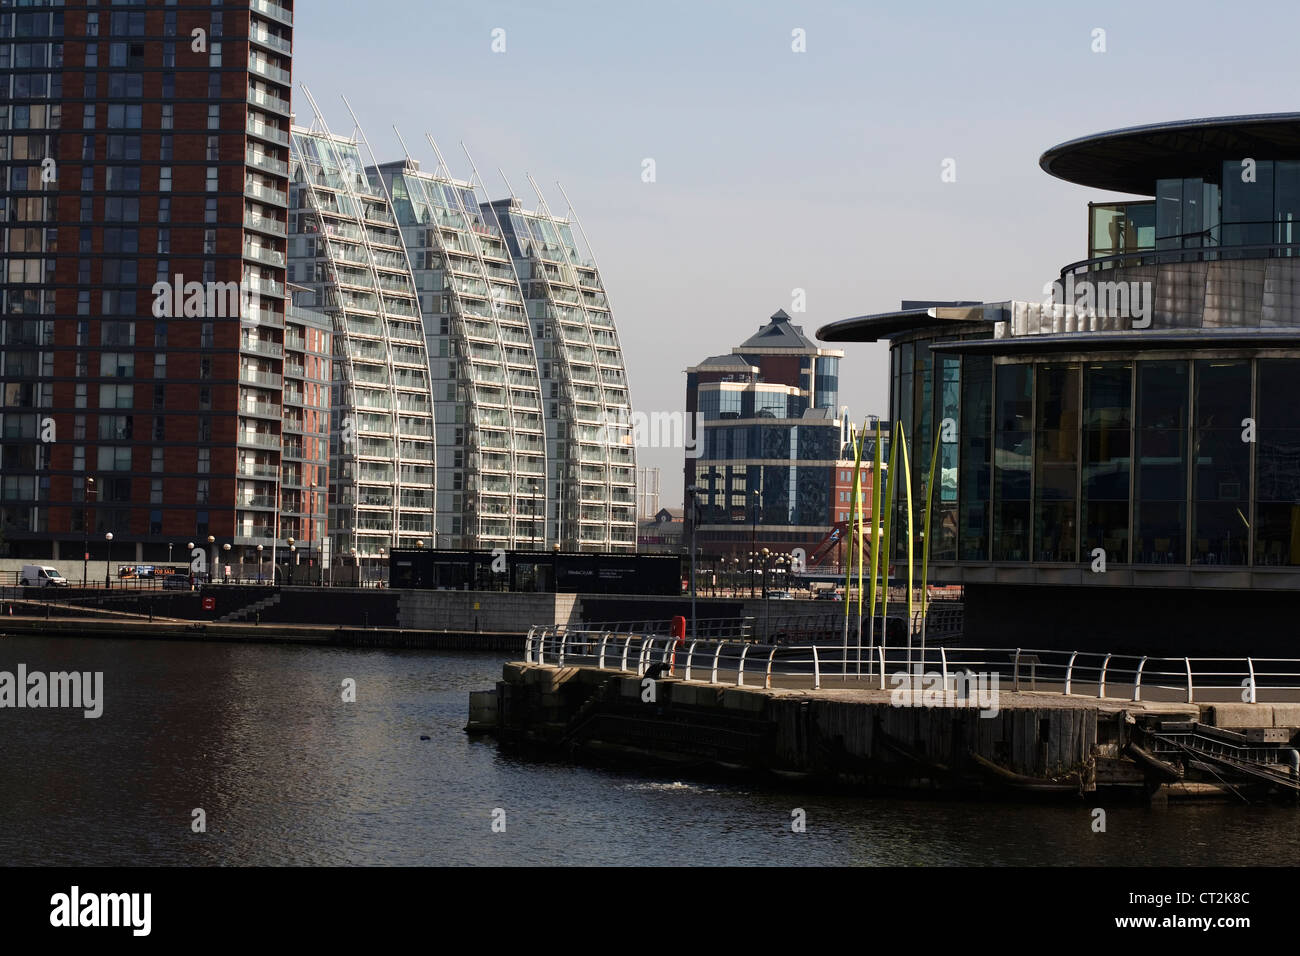 NV Edifici moderno appartamento di blocchi dal bacino di Huron Salford Quays Greater Manchester Inghilterra England Foto Stock